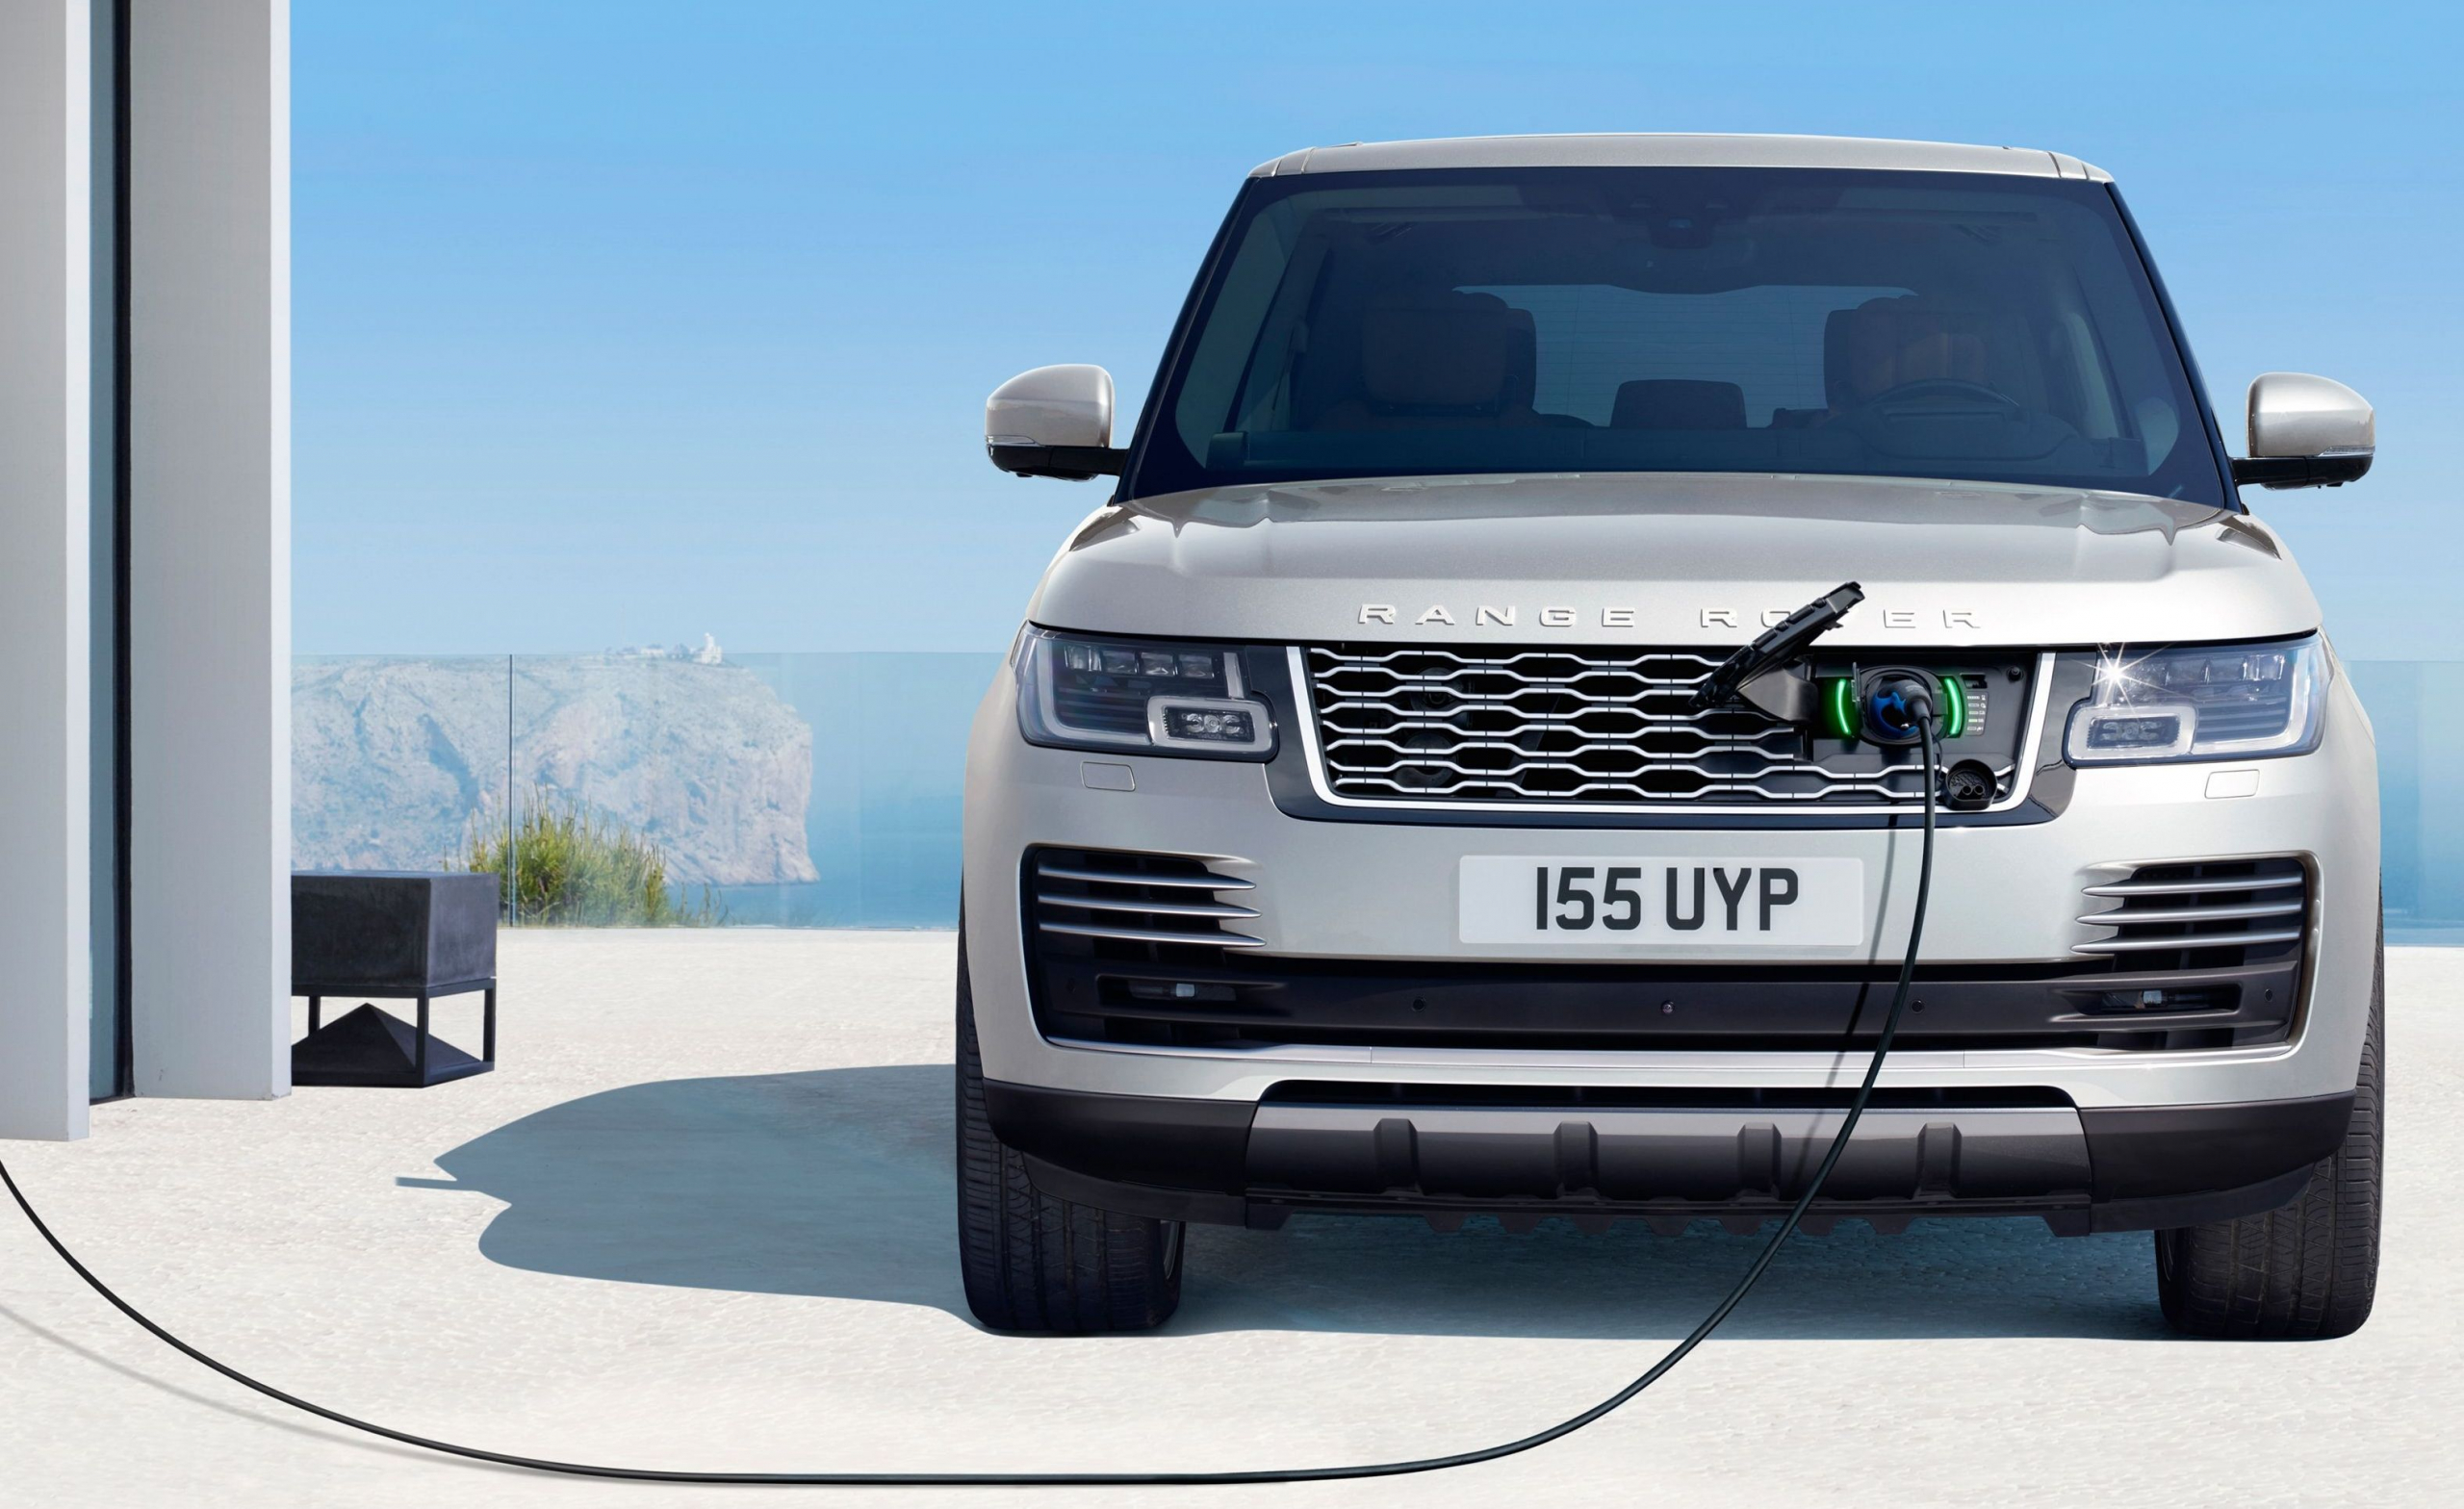 zingen Opgewonden zijn bestuurder Land Rover lanceert binnenkort volledig elektrische Range Rover -  AutoReview.nl